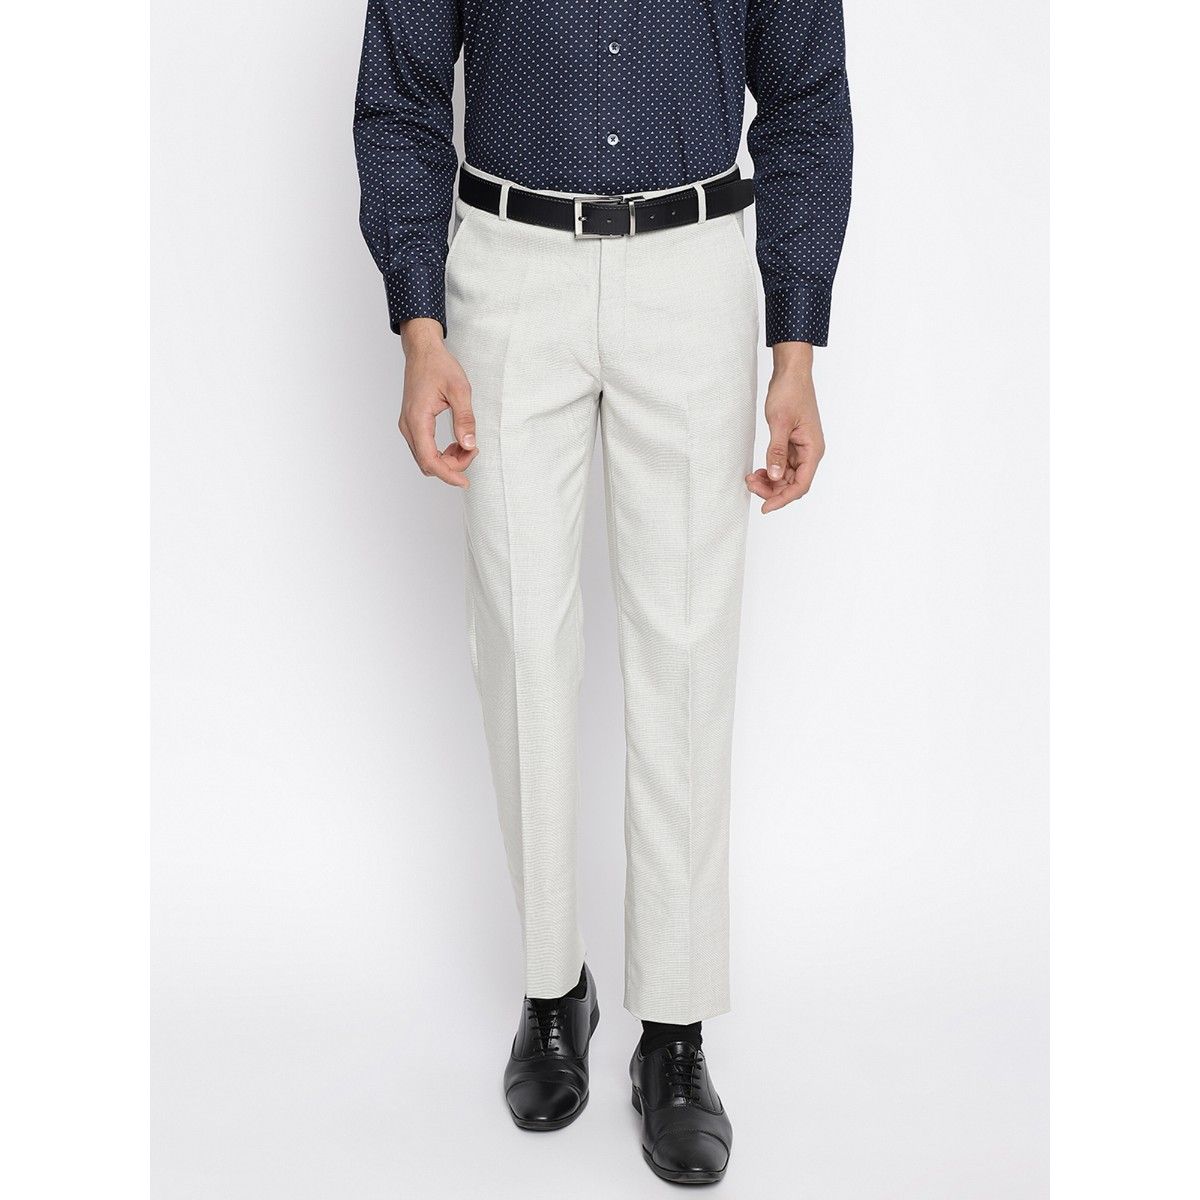 Buy JadeBlue Mens Black Terry Wool Classic Fit Solid Formal Trouser online